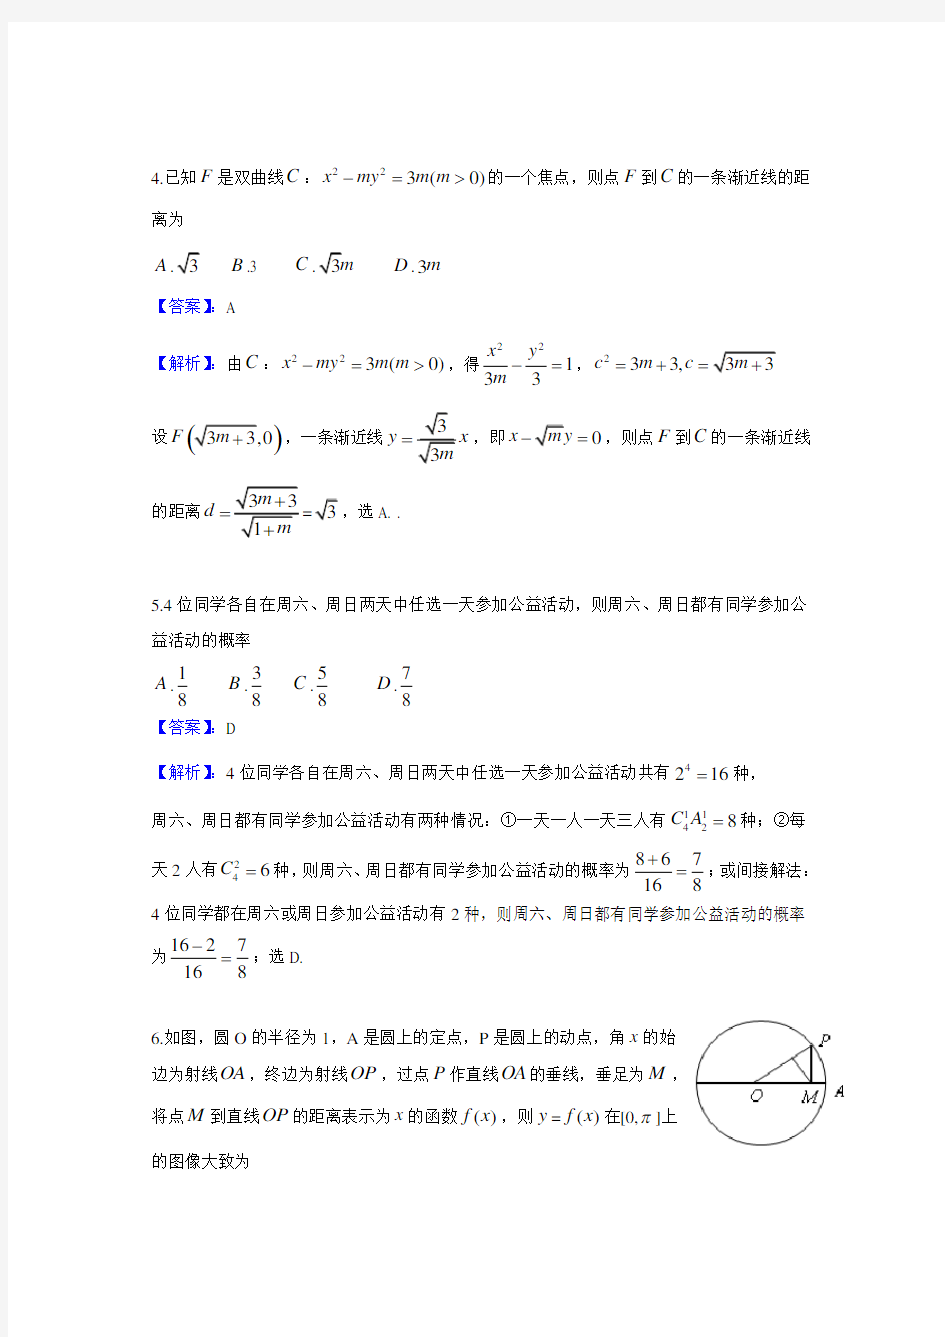 2014年高考新课标I卷理科数学试题及答案(河南 山西 河北)